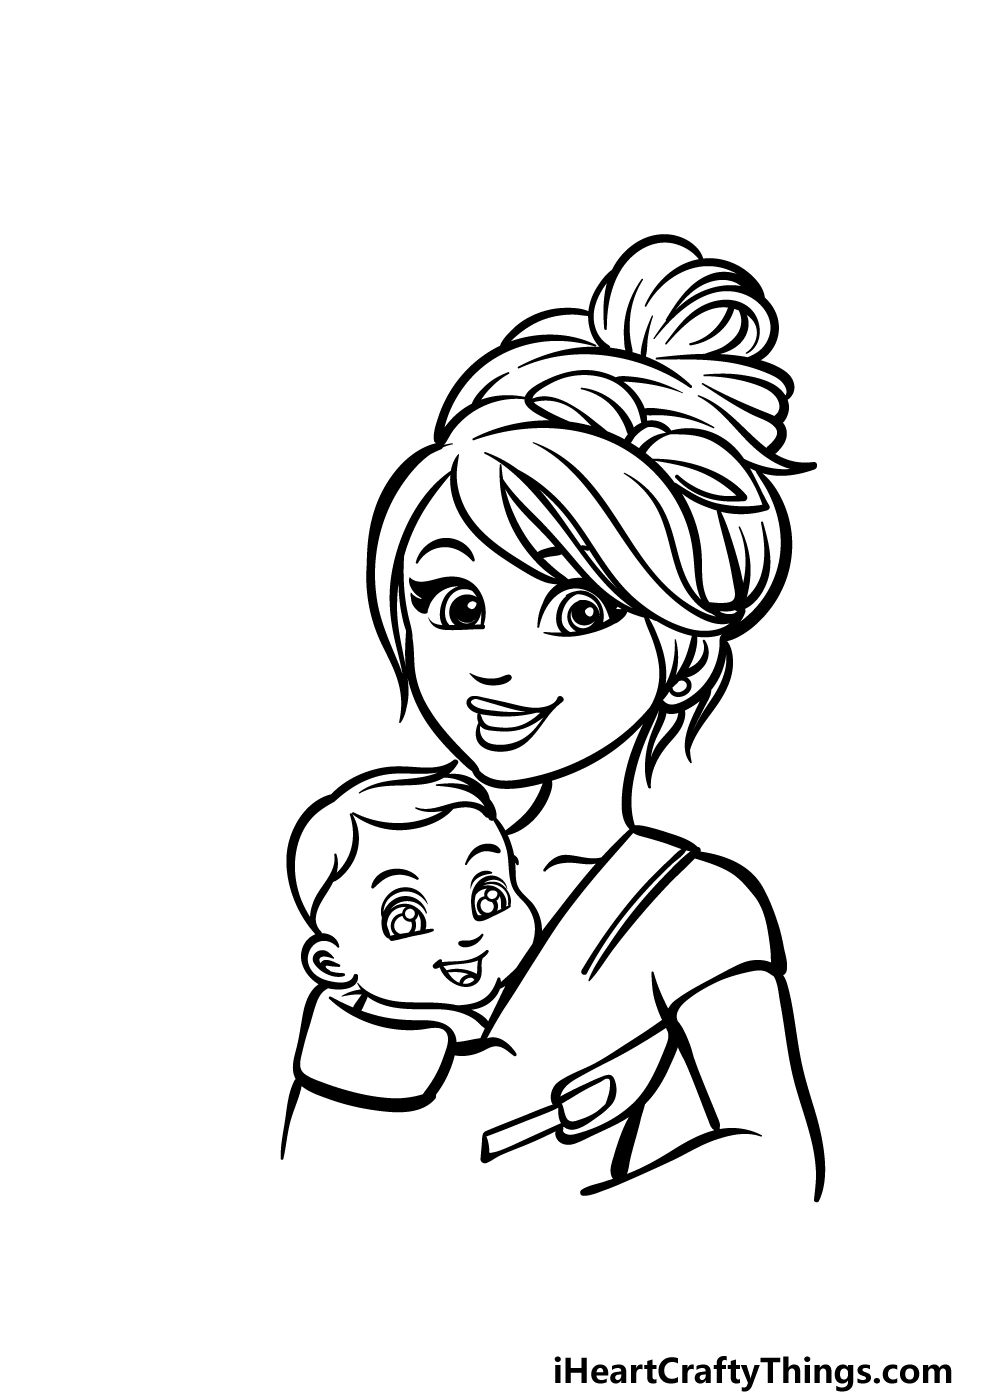 how to draw a cartoon mom step 4